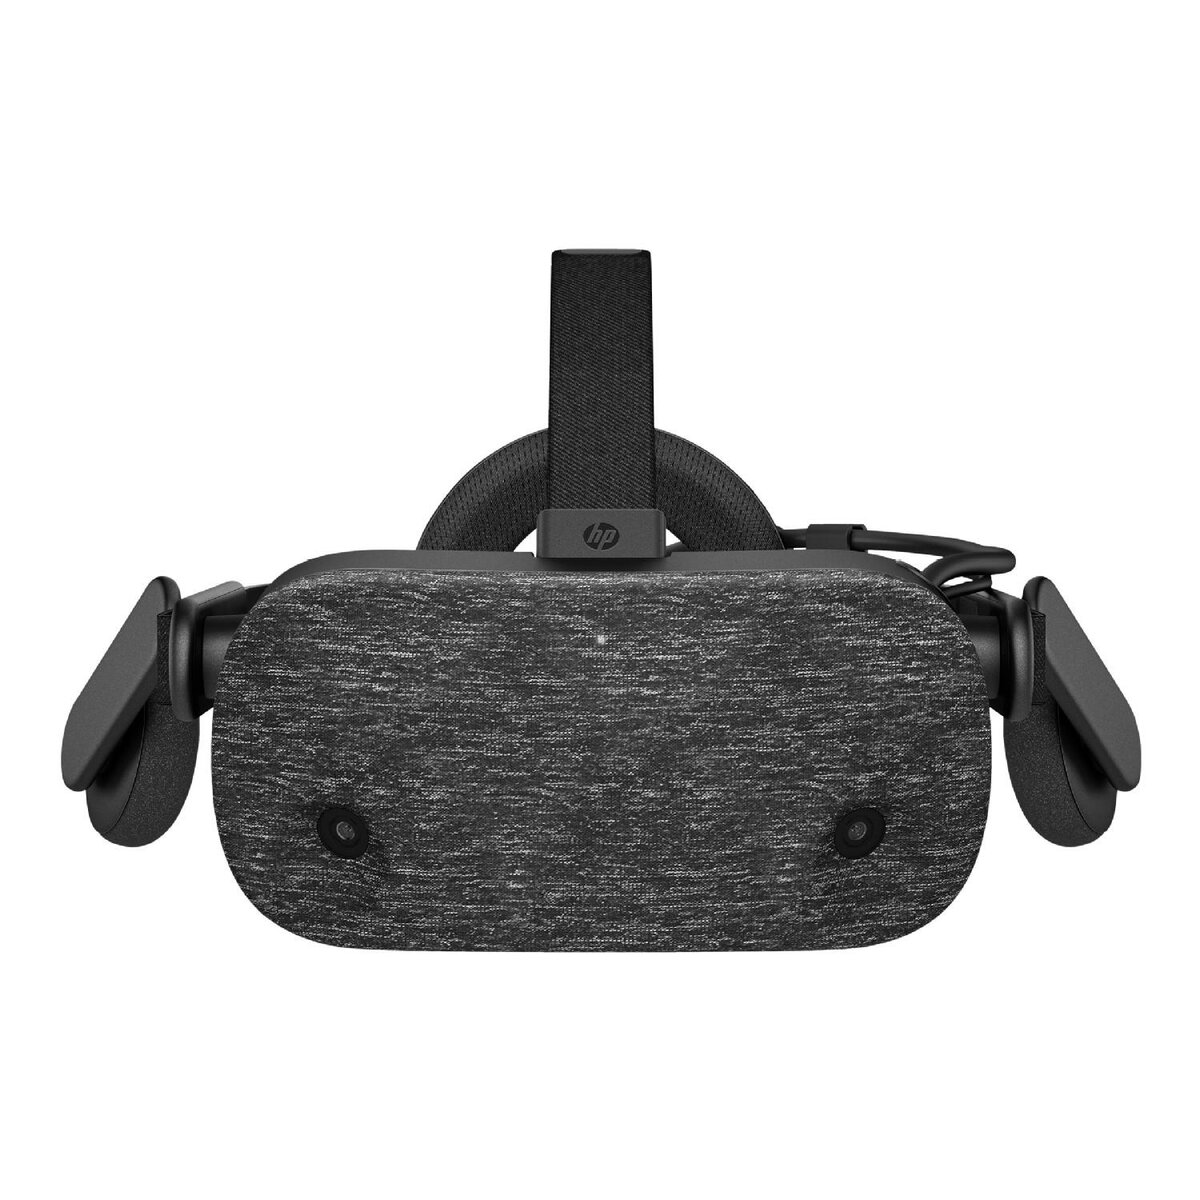 Качественный шлем HP Reverb VR Headset - Pro Edition